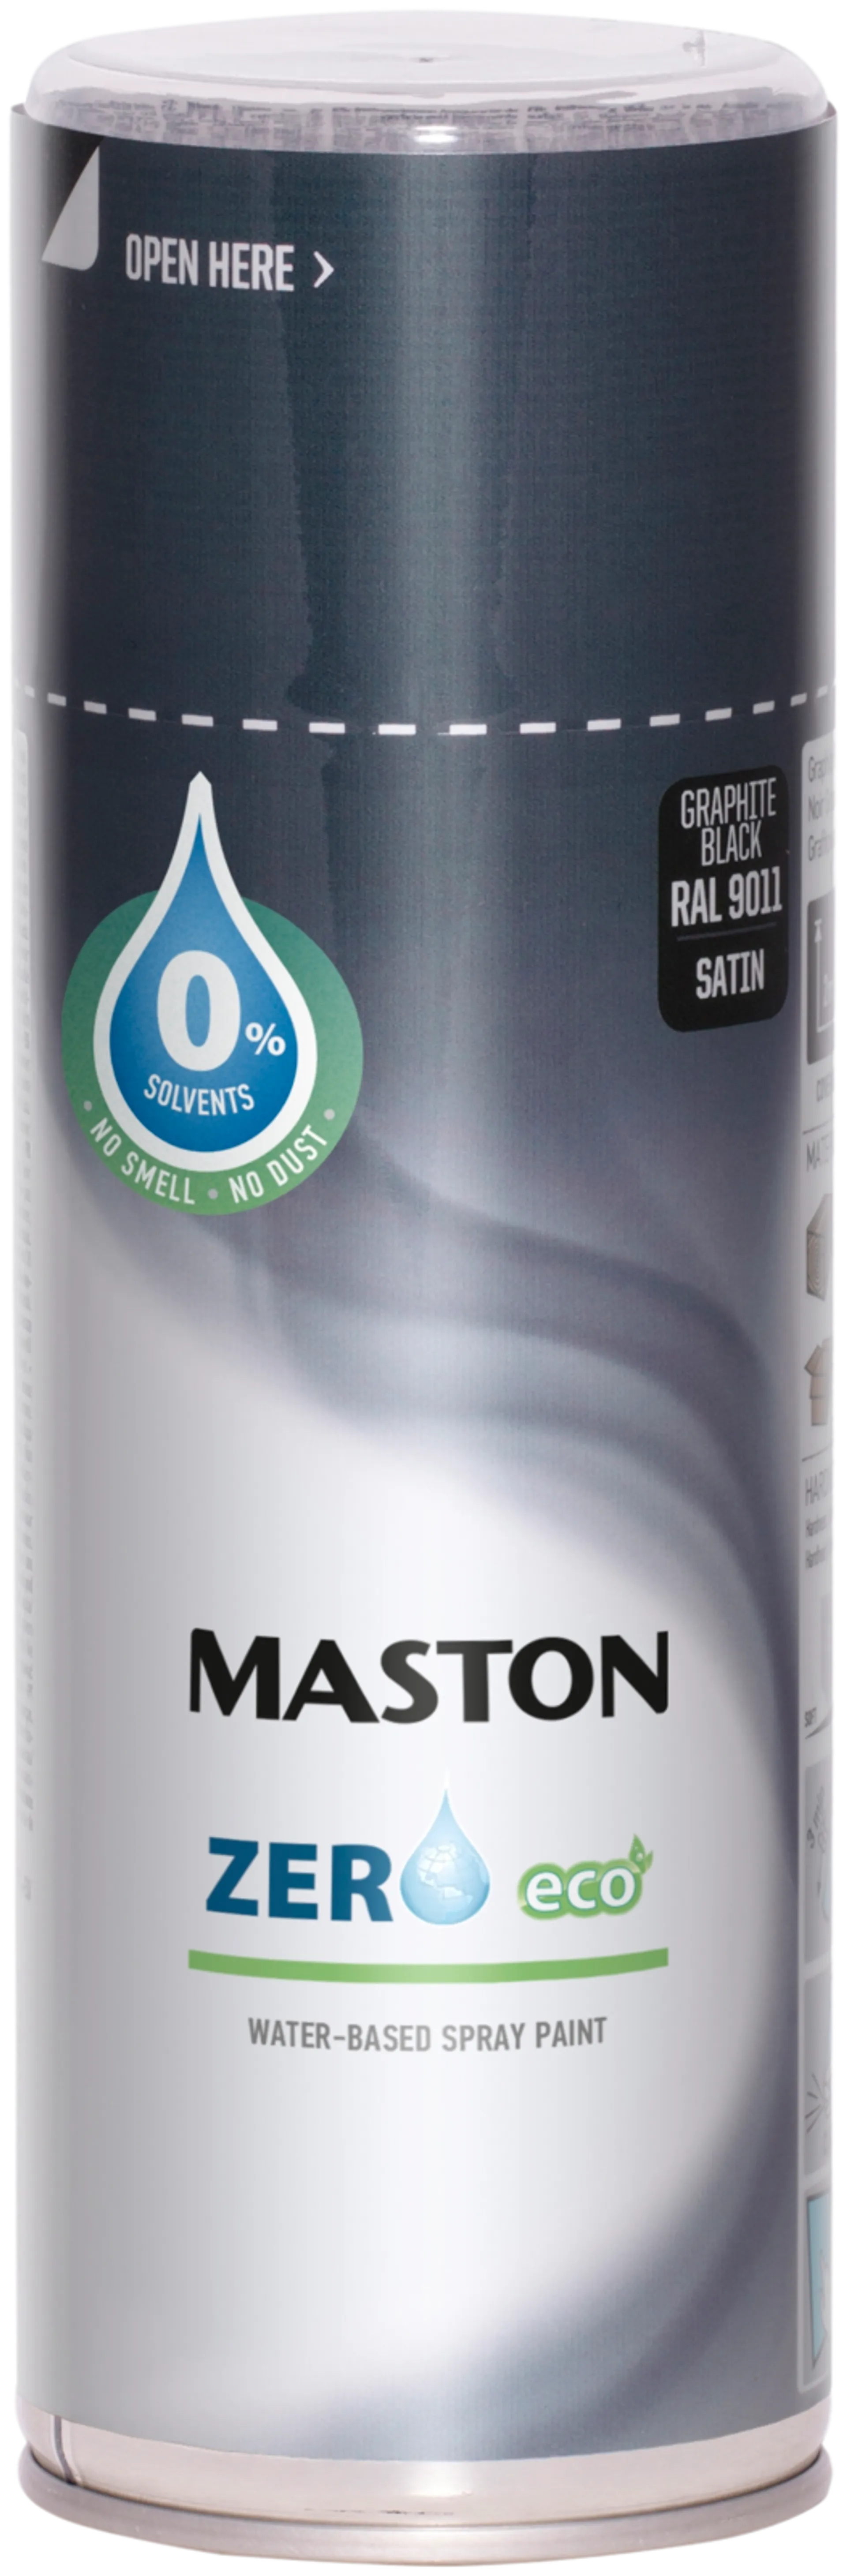 Maston Zero spraymaali grafiitti musta 400ml